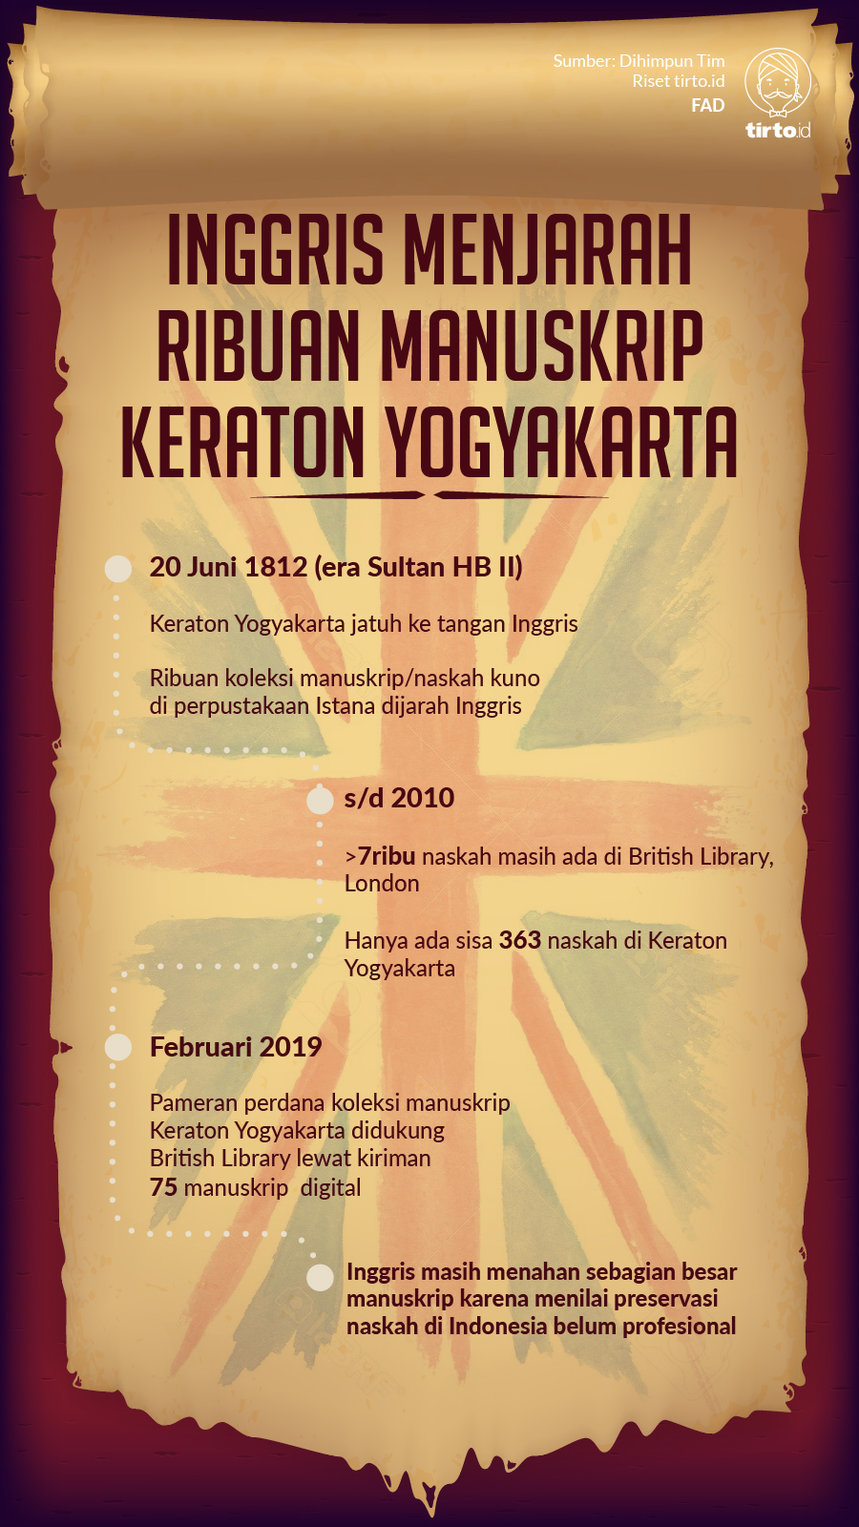 Infografik Inggris Menjarah Ribuan Manuskrip Keraton Yogyakarta